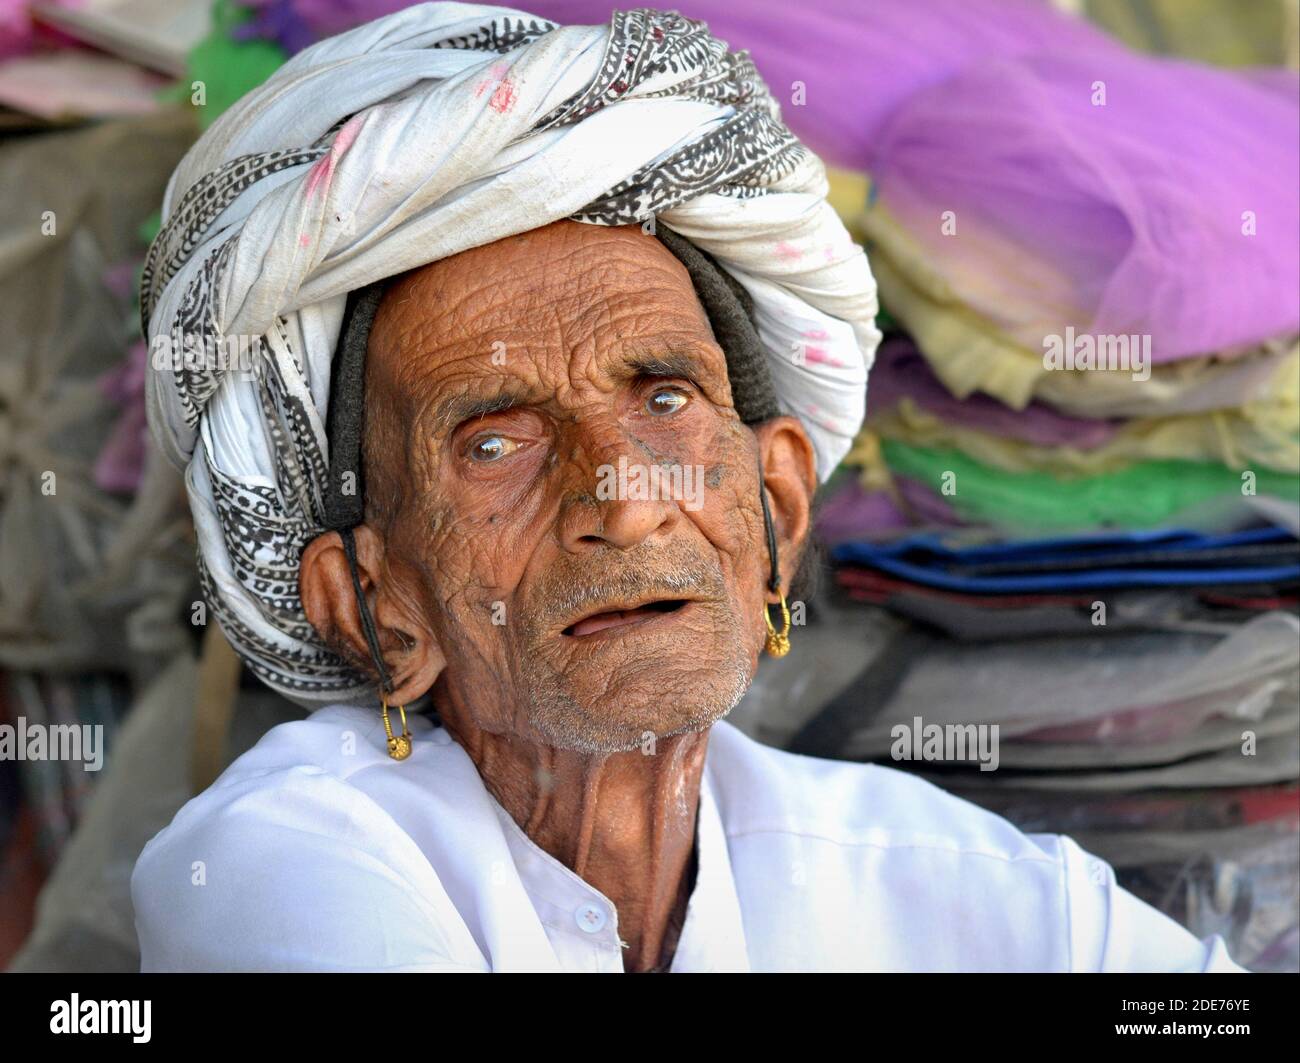 Un viejo rabino indio deshilachado con pendientes tribales dorados y cara arrugada lleva un turbante tradicional y mira al espectador. Foto de stock